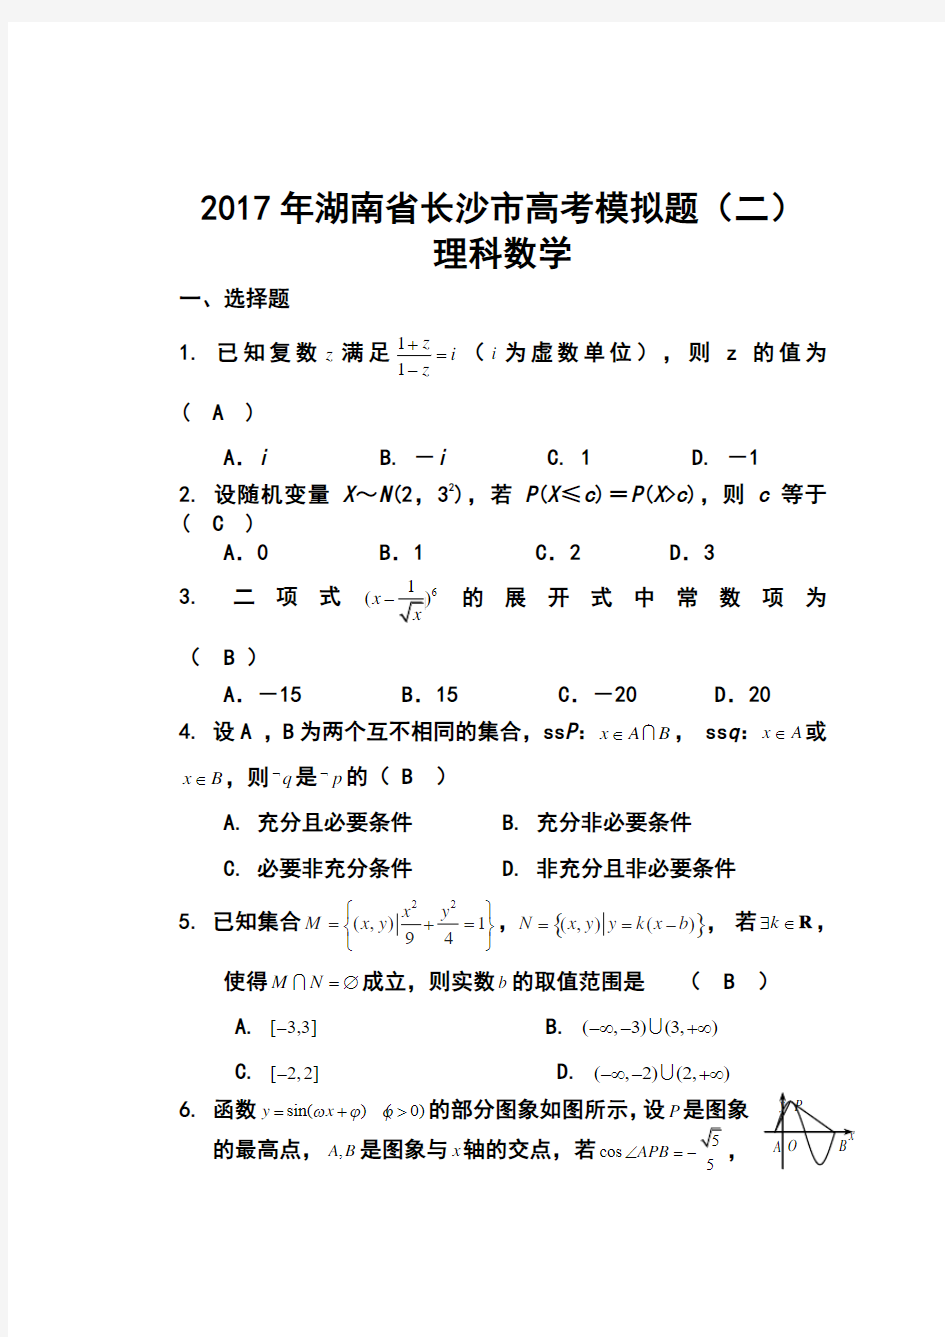 2017届湖南省长沙市高三高考模拟题(二)理科数学试题及答案